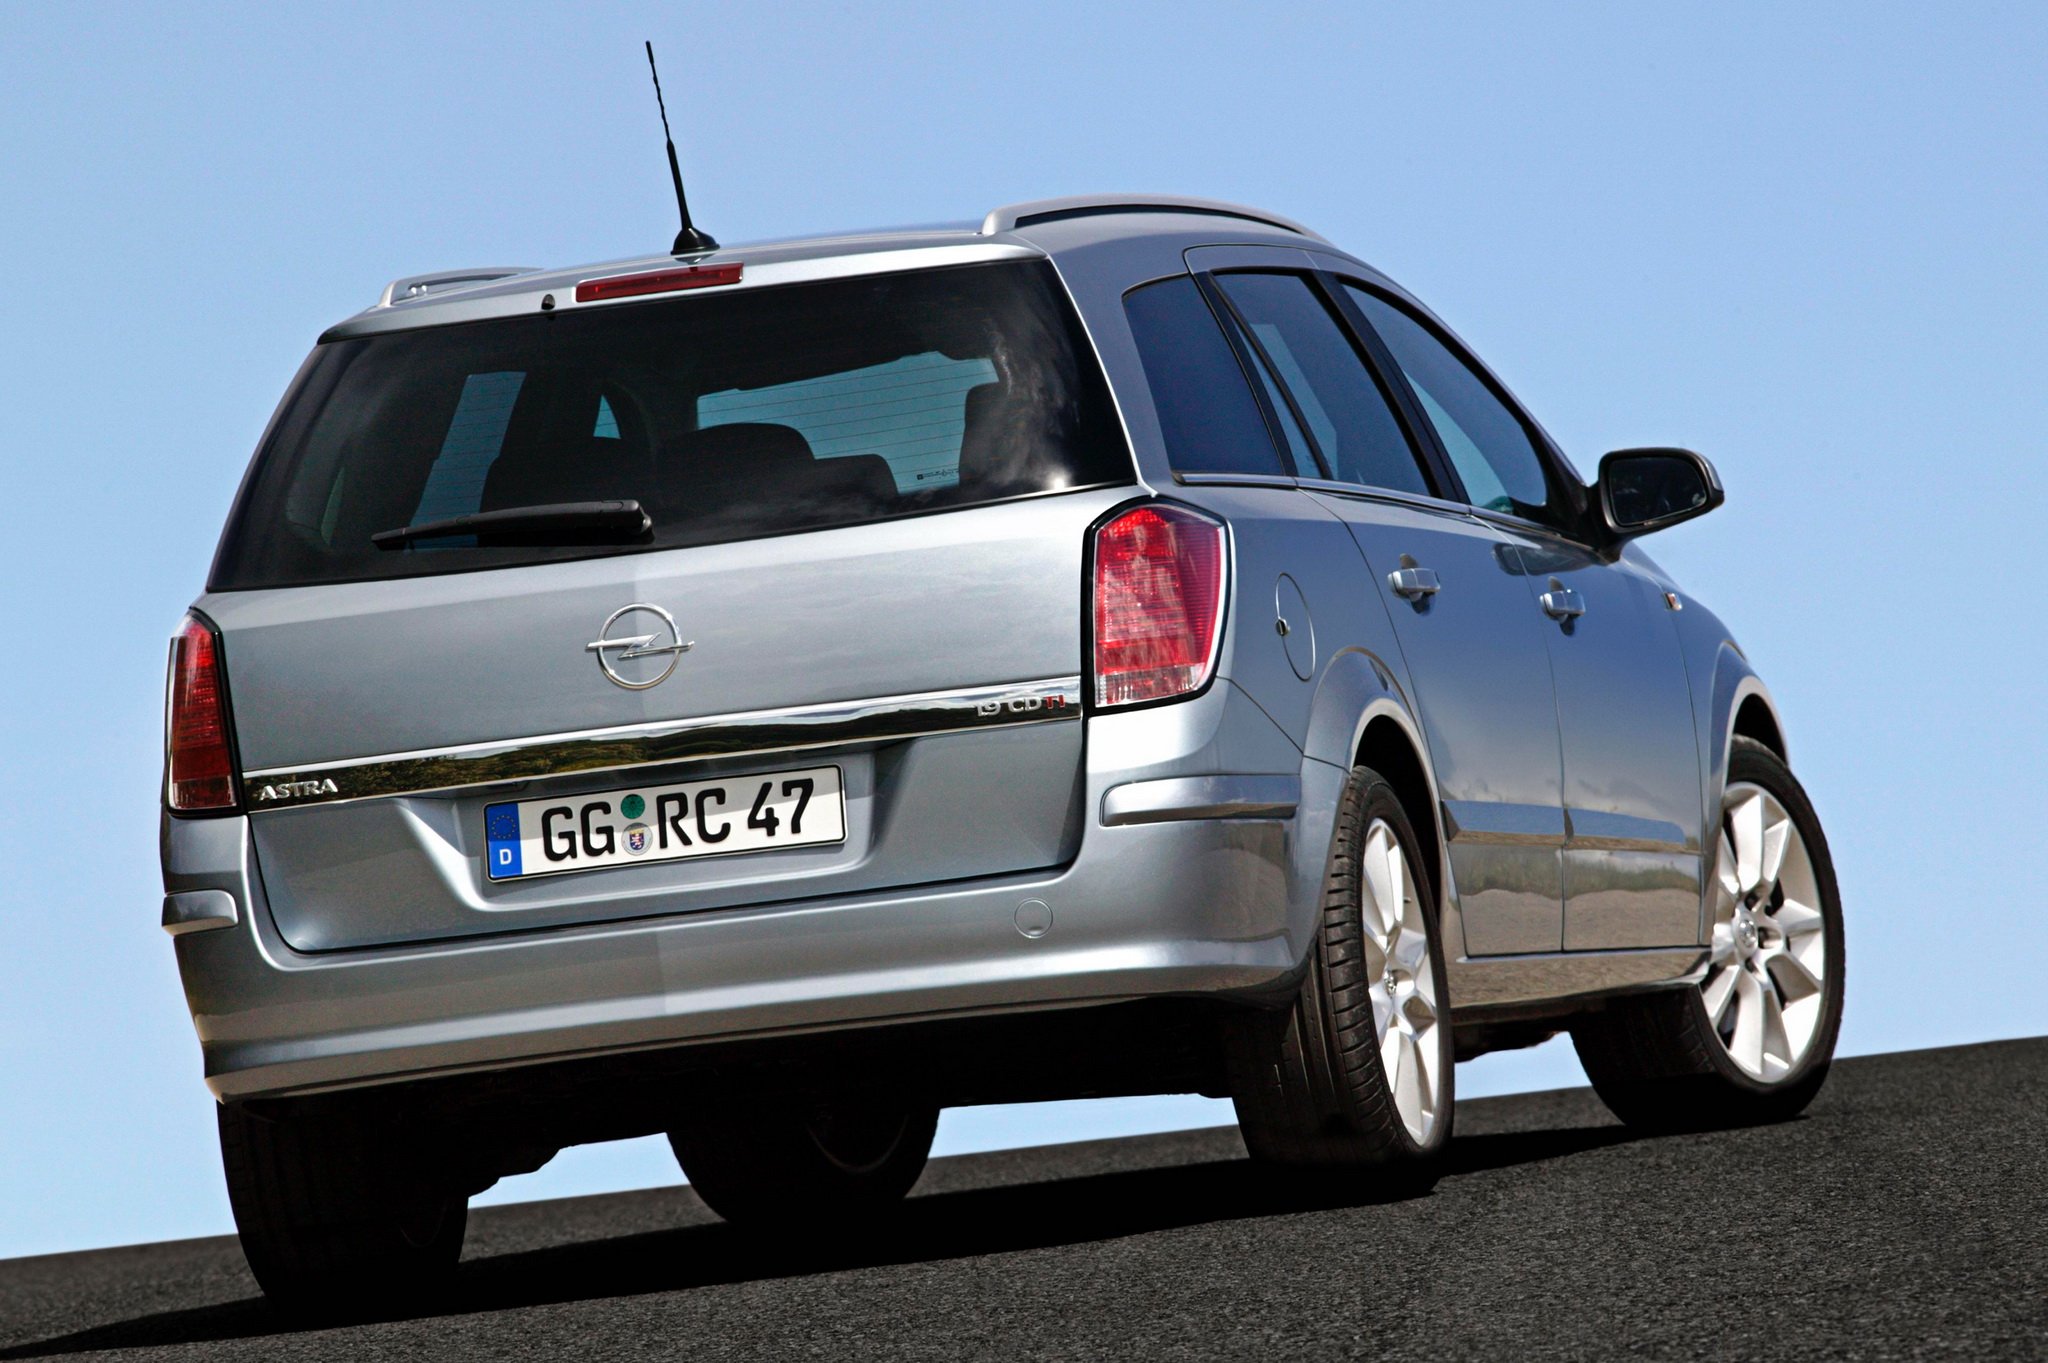 Универсал 1 7. Opel Astra 2004 универсал. Opel Astra Caravan 2007. Opel Astra 2004-2007 универсал. Opel Astra h универсал 2004.